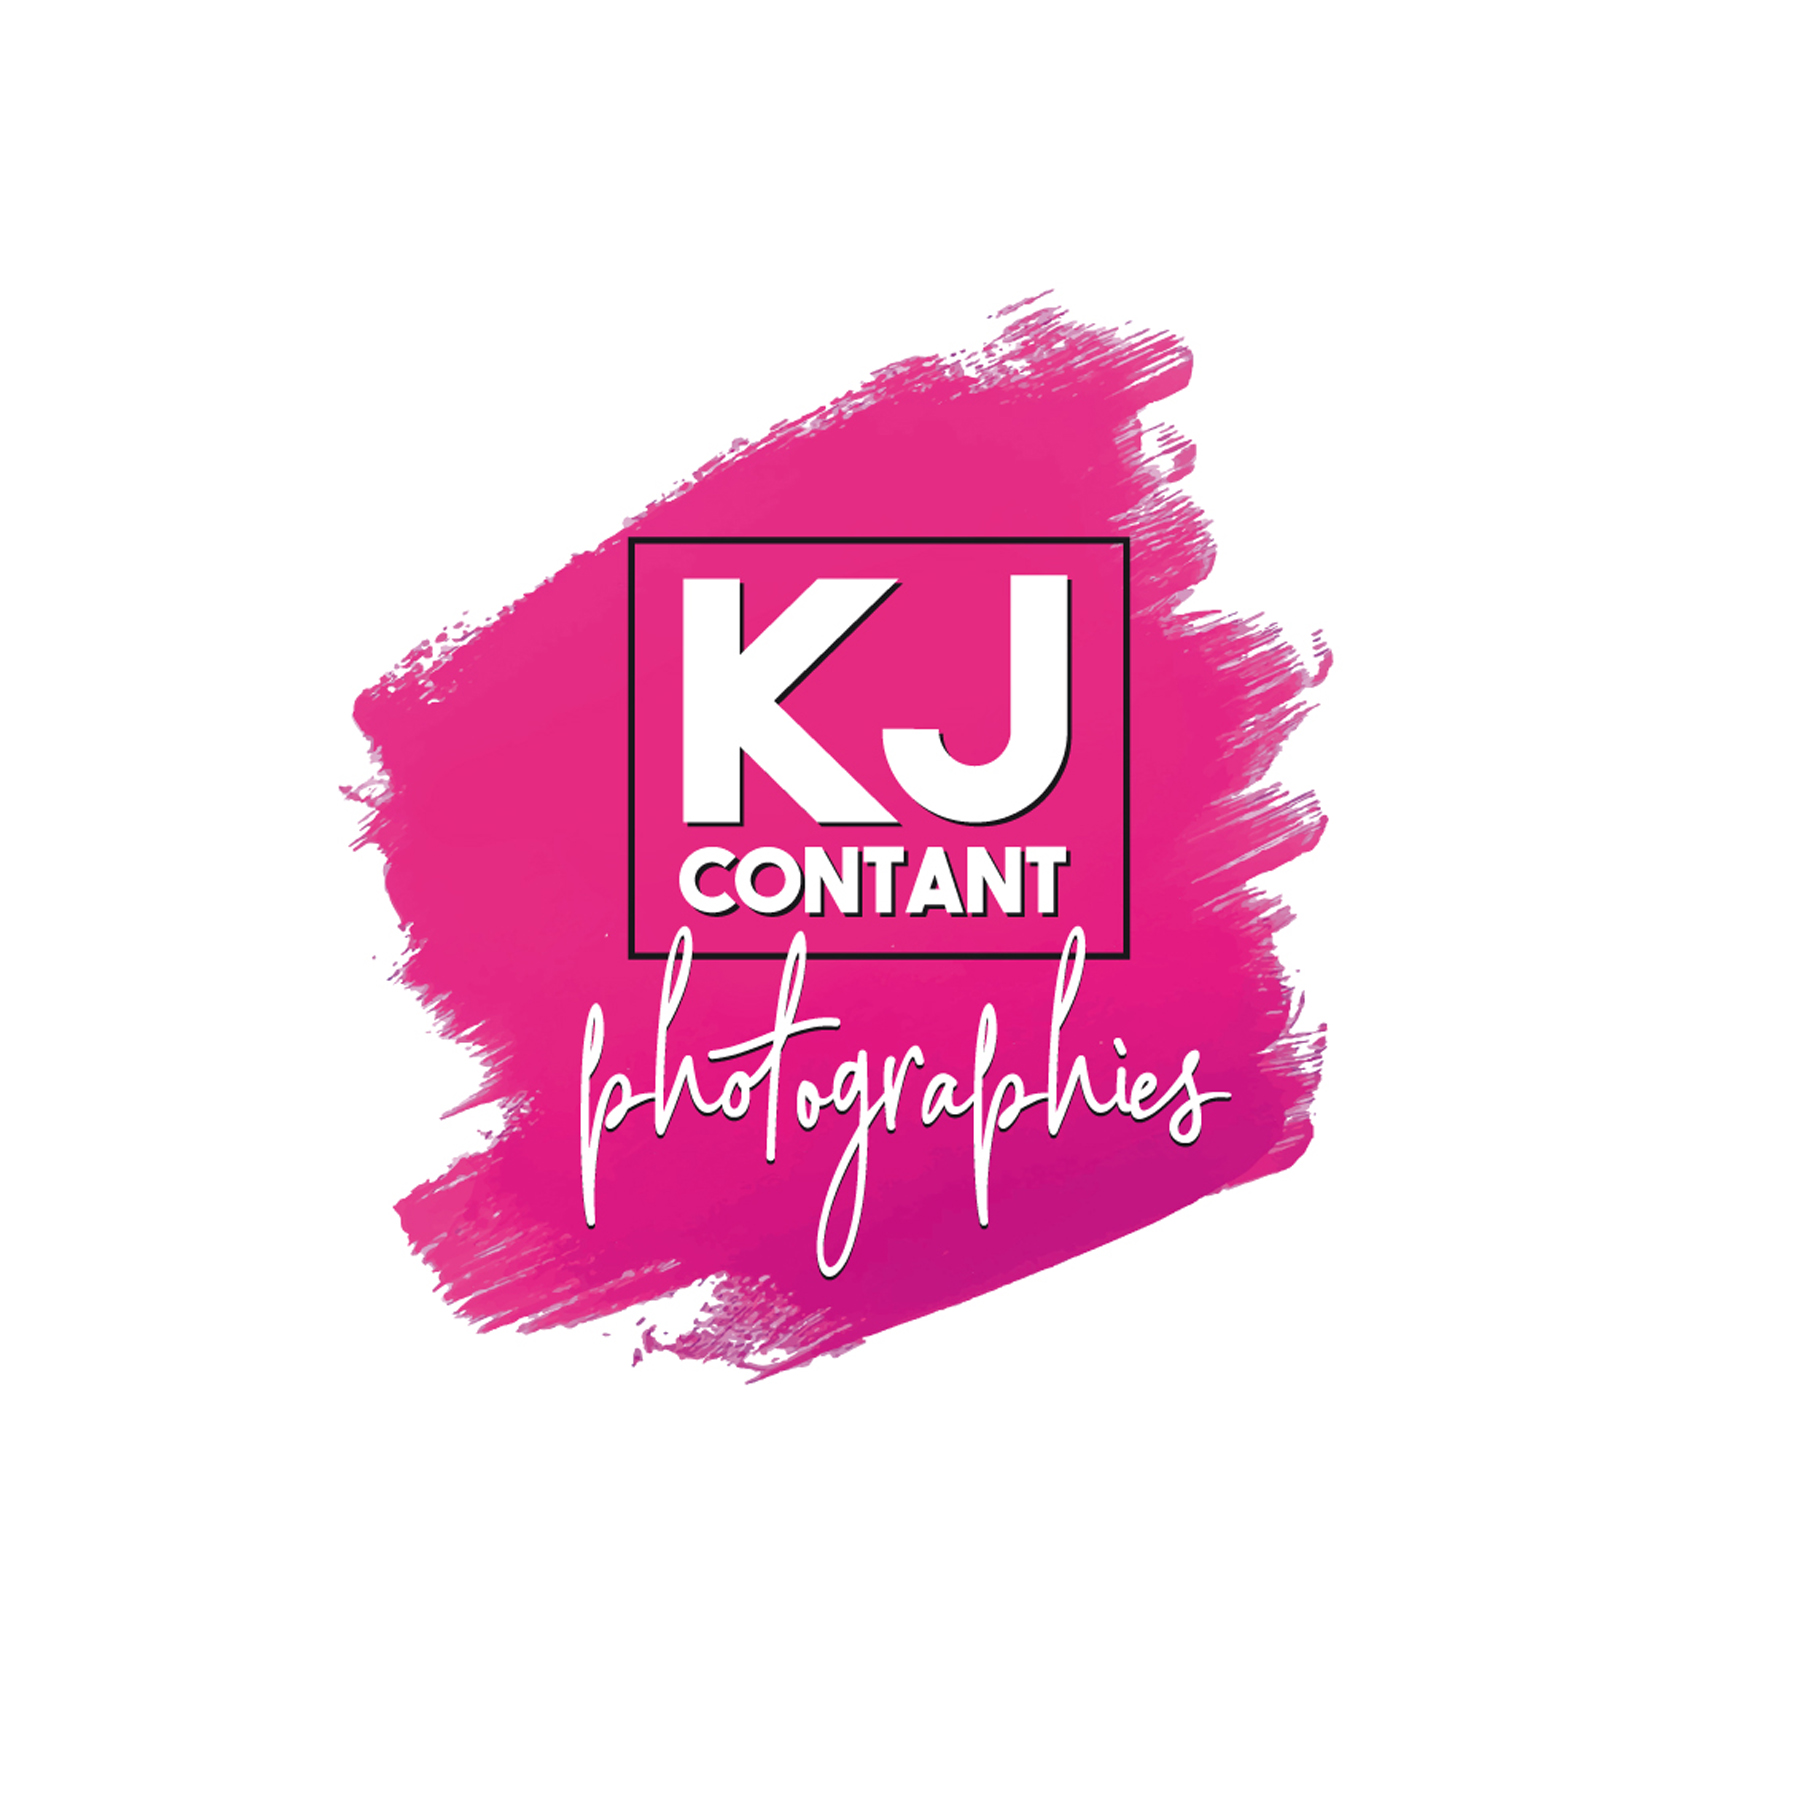 Création du logo KJ Contant